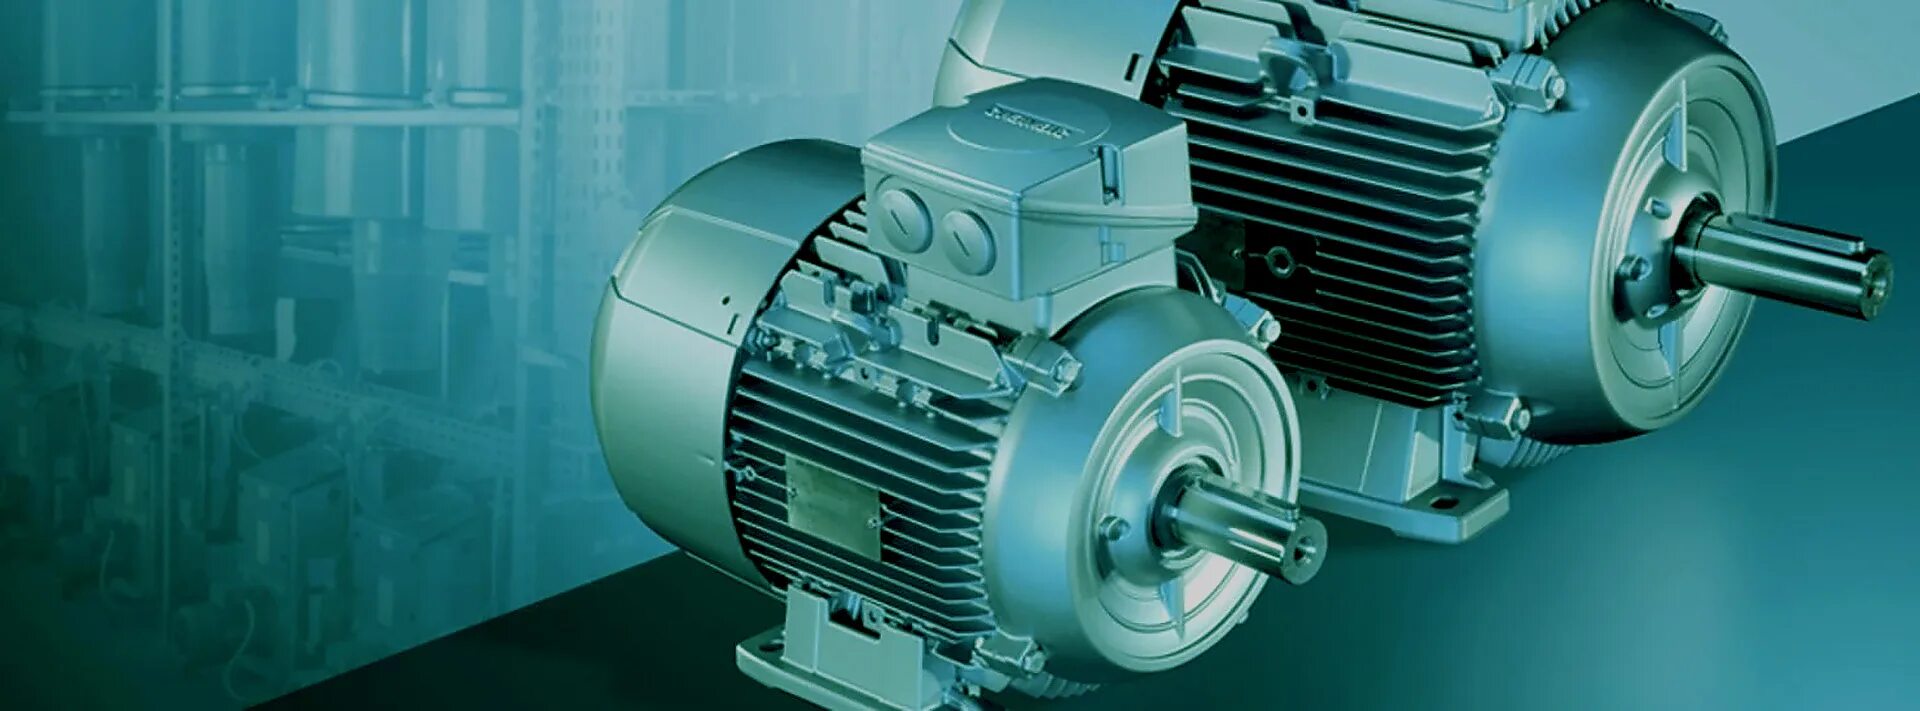 Купить двигатель в ремонт. Асинхронные электродвигатели Siemens 1ph6. Электродвигатели азо, 400/6000. Электромотор промышленный. Производители электродвигателей.